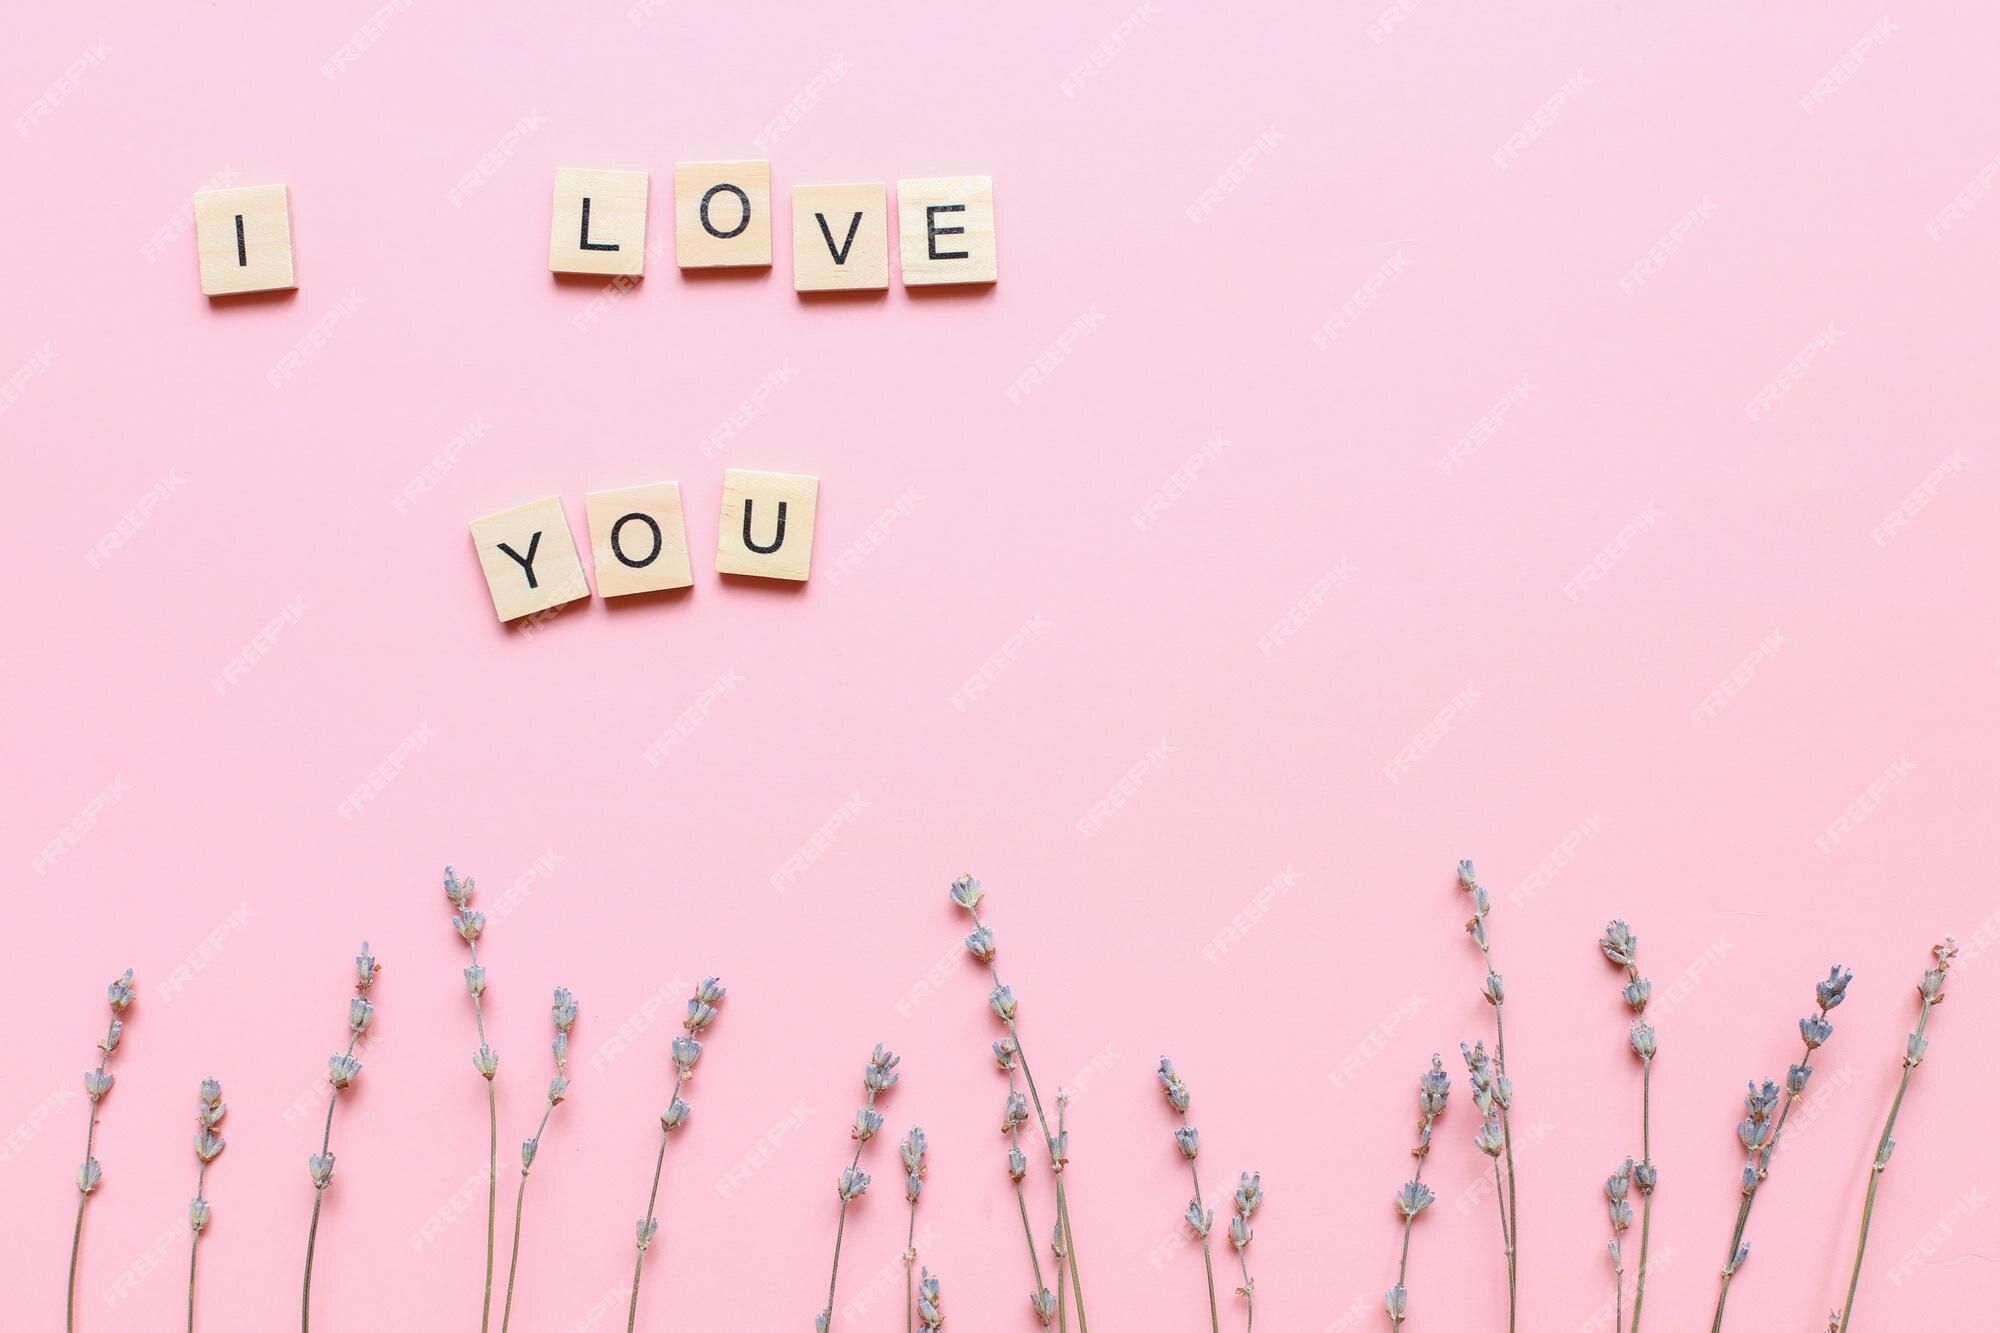  Ich Liebe Dich Hintergrundbild 2000x1333. Ich Liebe Dich Aus Holzbuchstaben Auf Rosa Hintergrund Mit Blumen Muttertagskarte. Flache Lage Für Den Muttertag